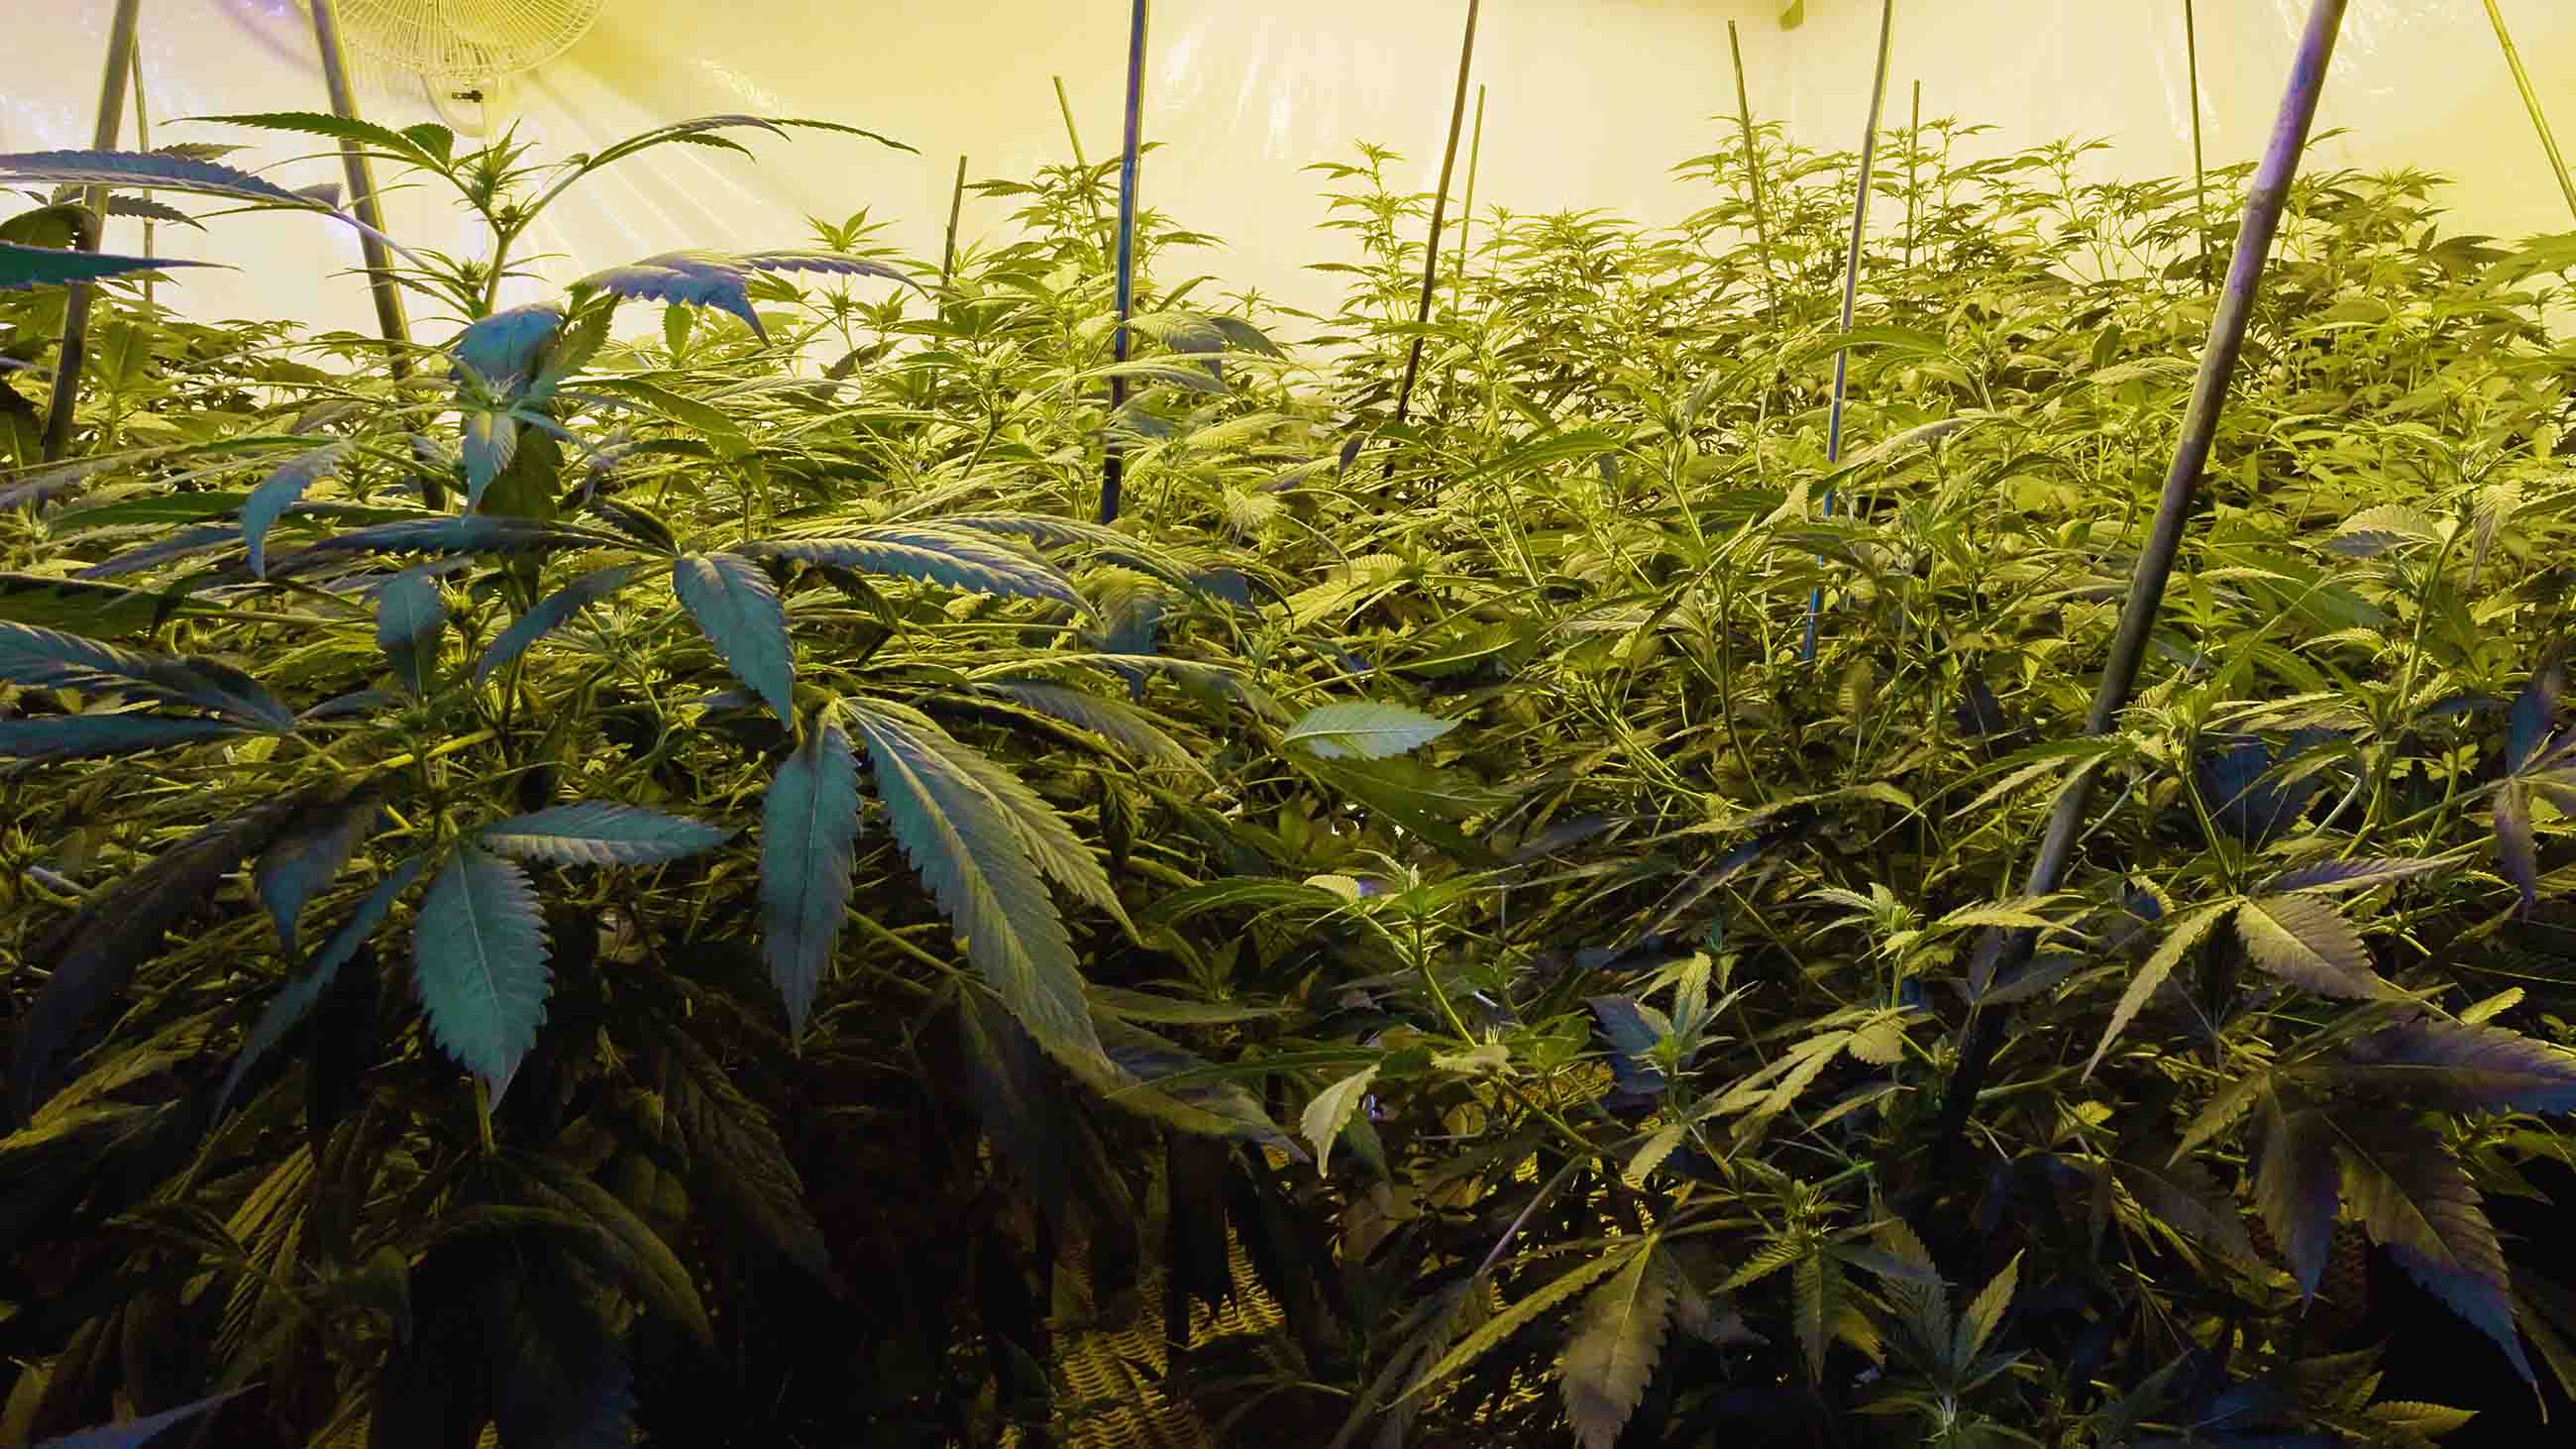 A grow farm of medicinal marijuana.